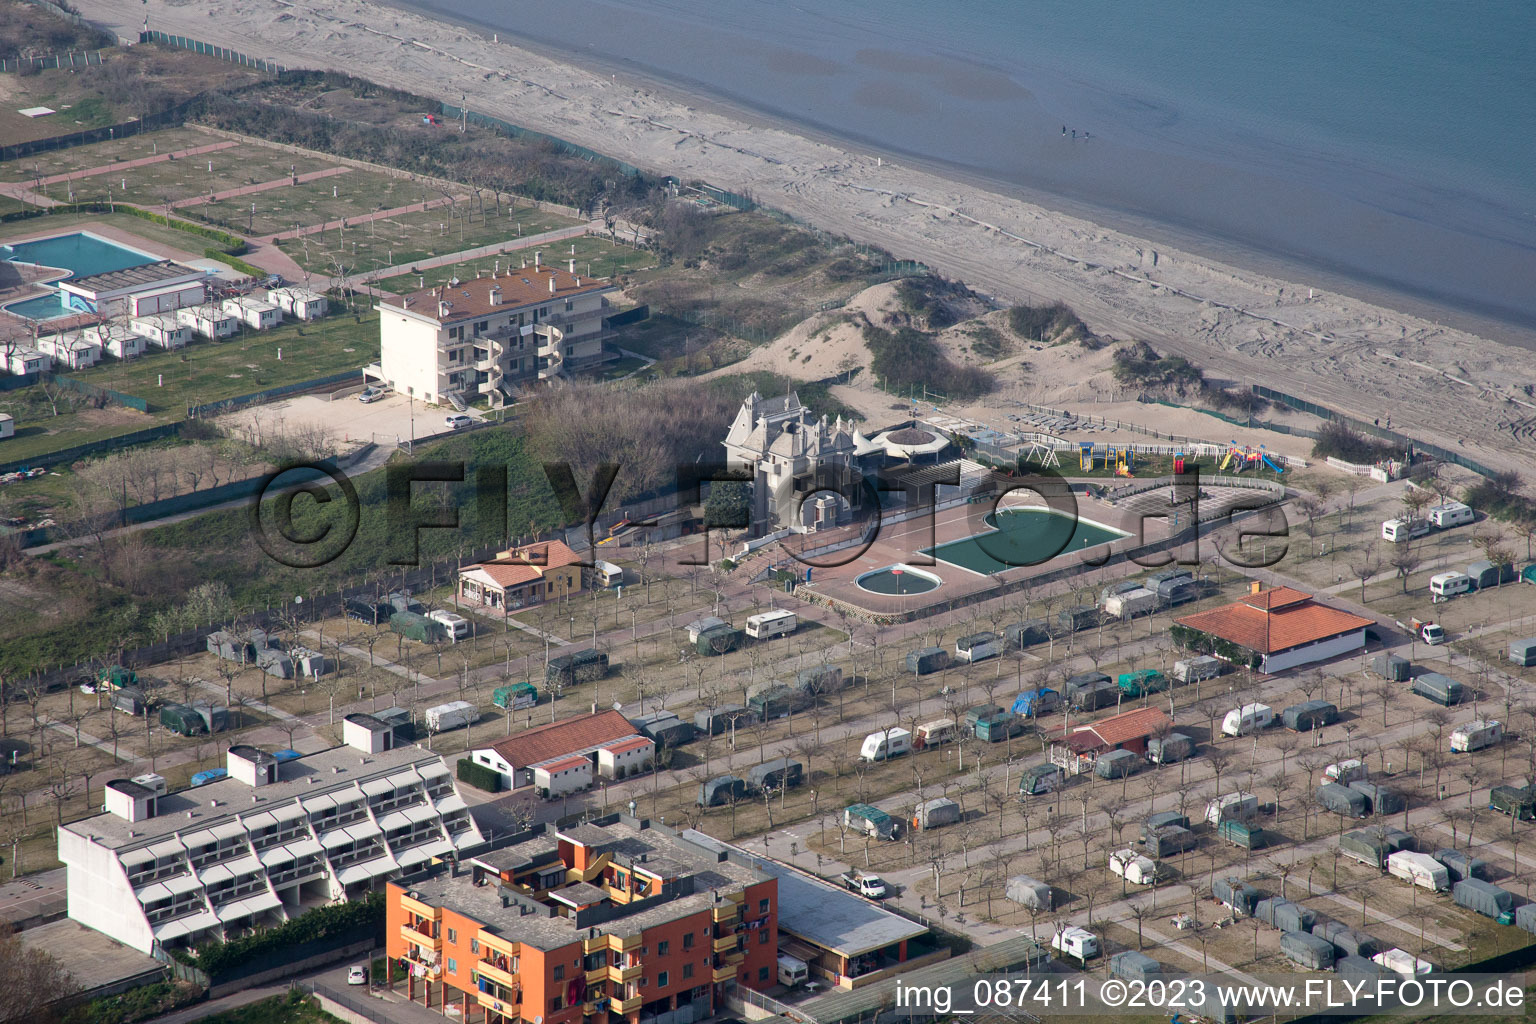 Aerial view of Sottomarina di Chioggia in the state Veneto, Italy